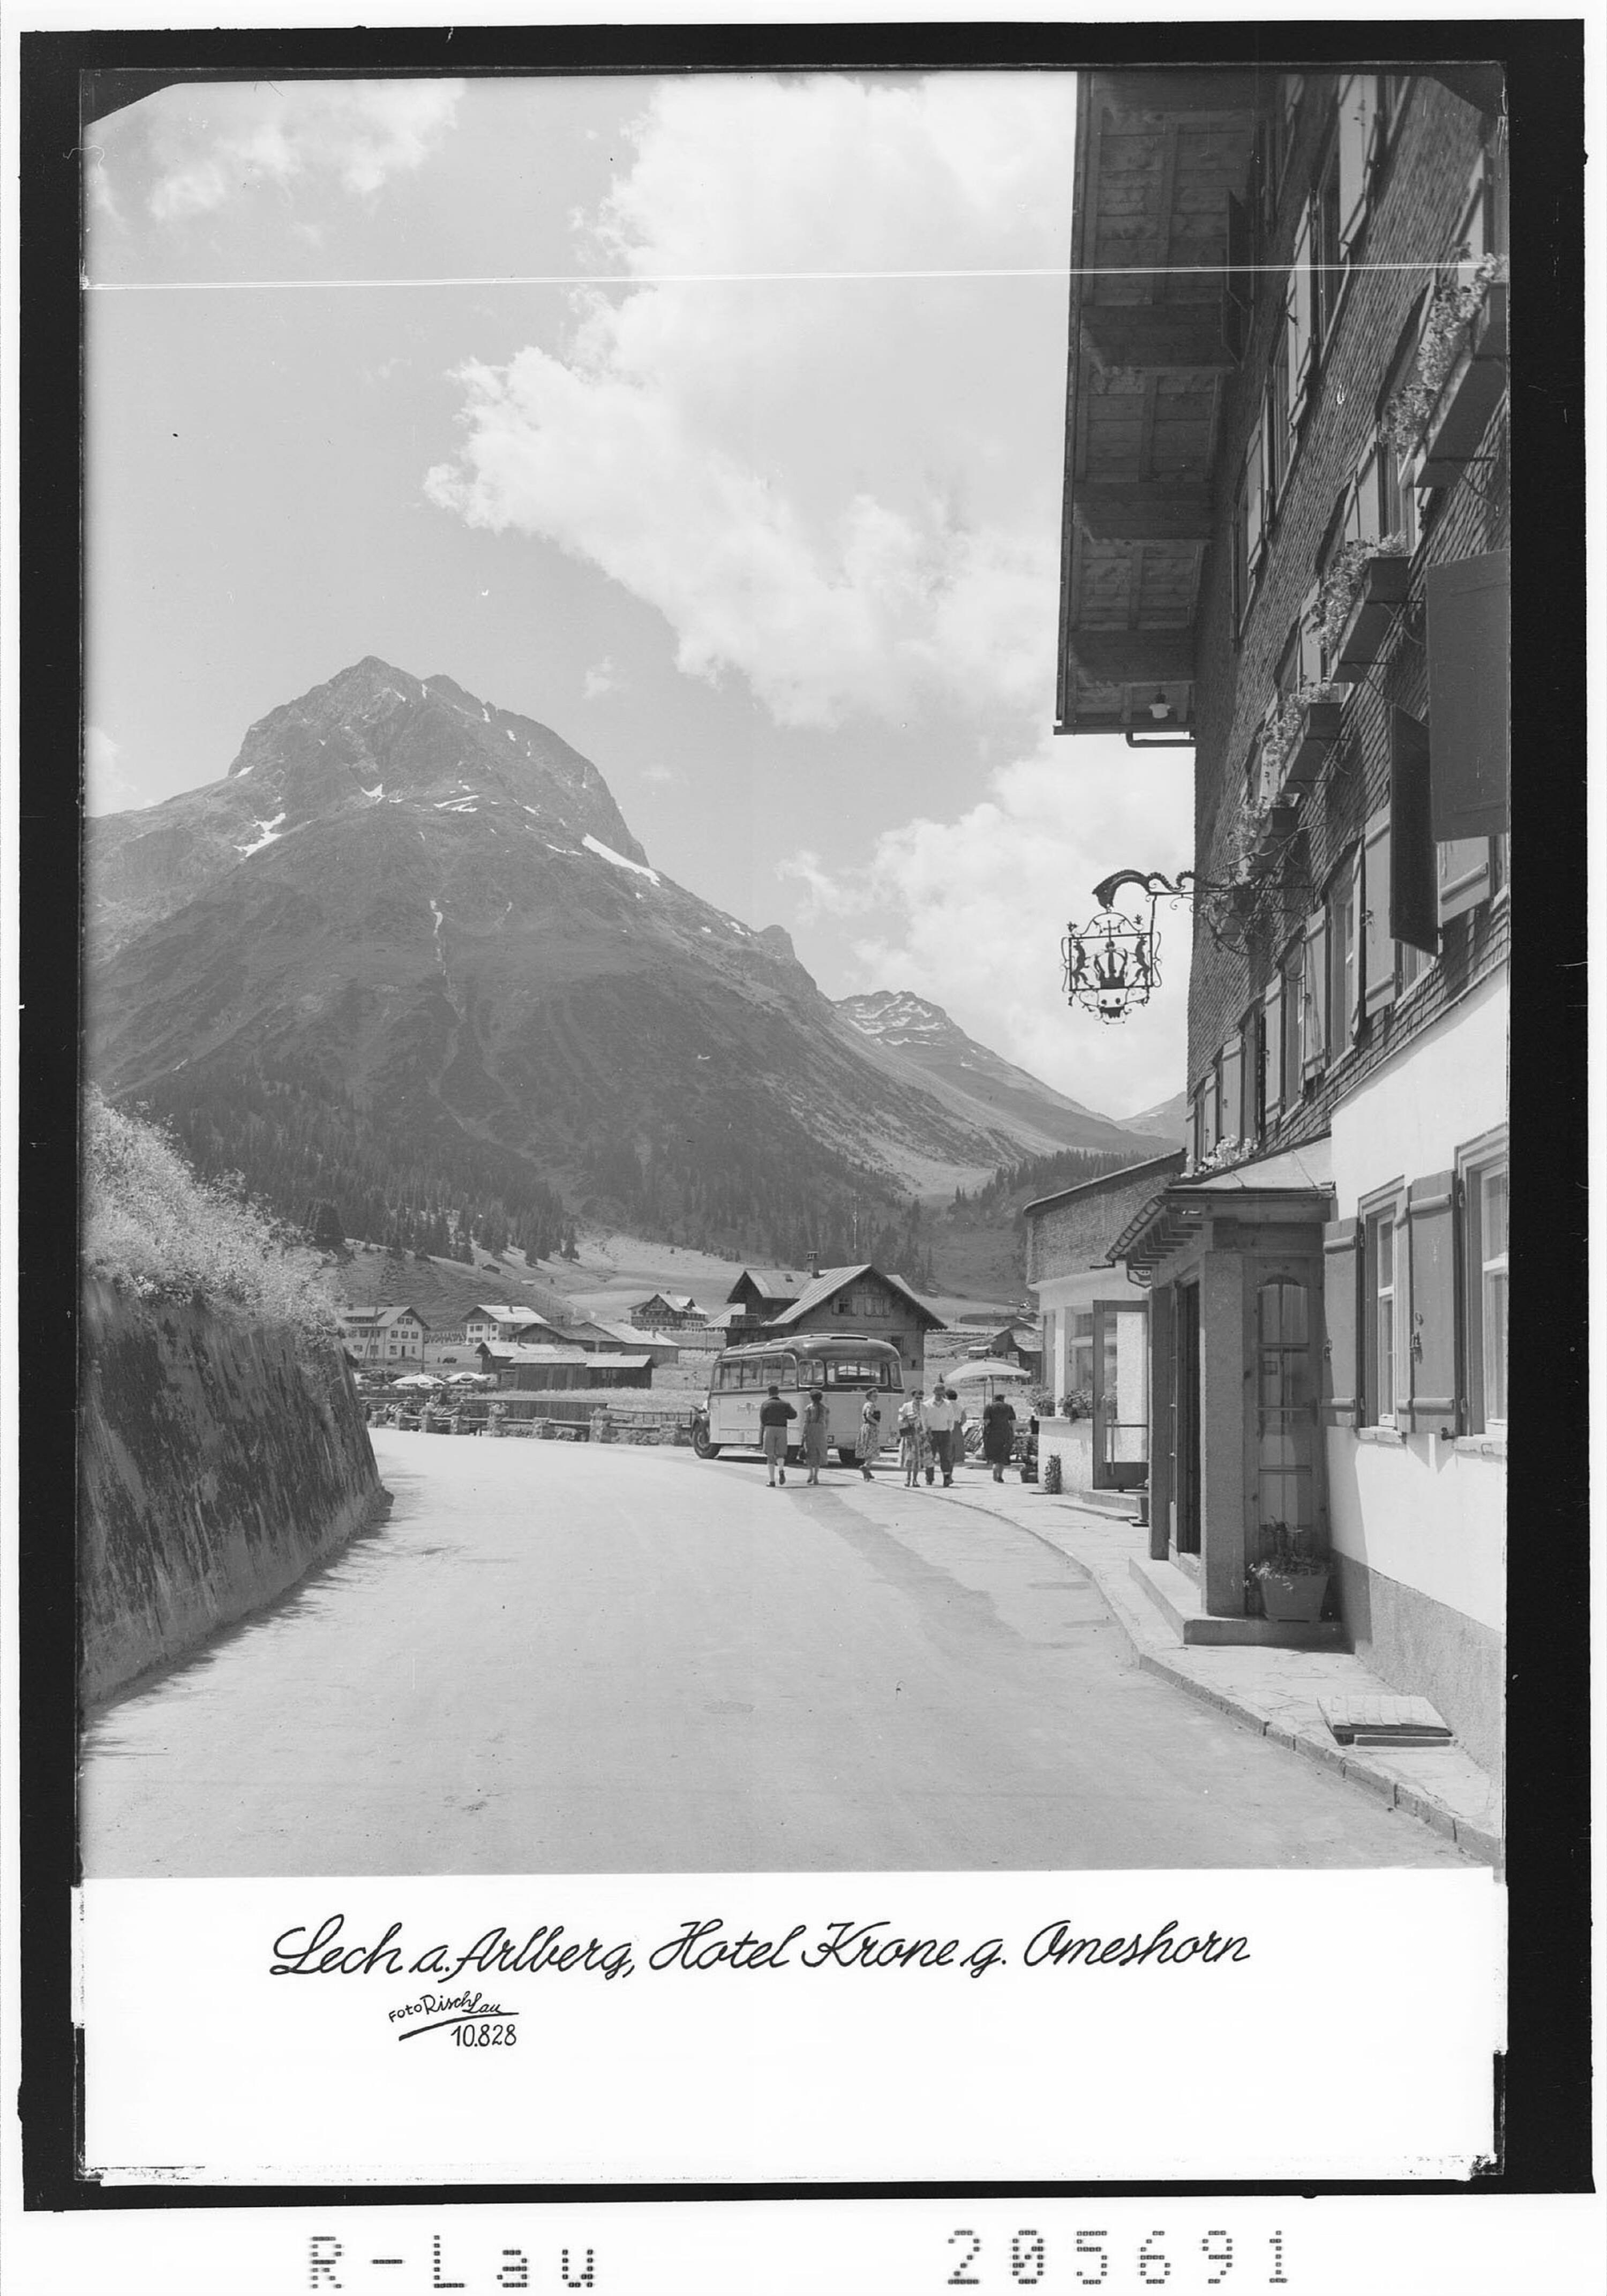 [Lech am Arlberg / Hotel Krone gegen Omeshorn]></div>


    <hr>
    <div class=